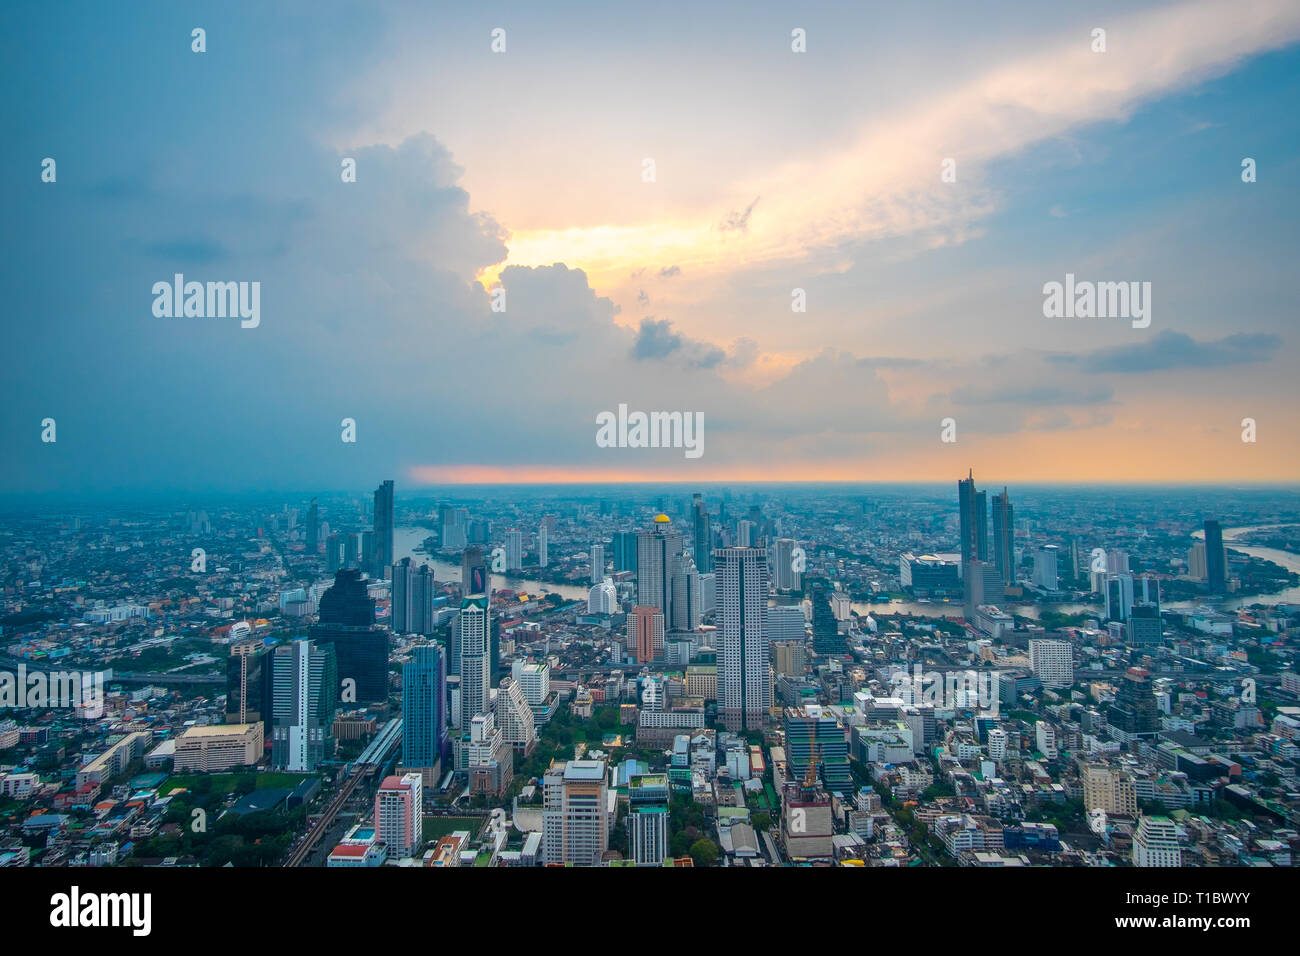 Luftaufnahme von Bangkok Stadtbild mit Skyline während des Sonnenuntergangs. Die Capitalcity von Thailand. Stockfoto